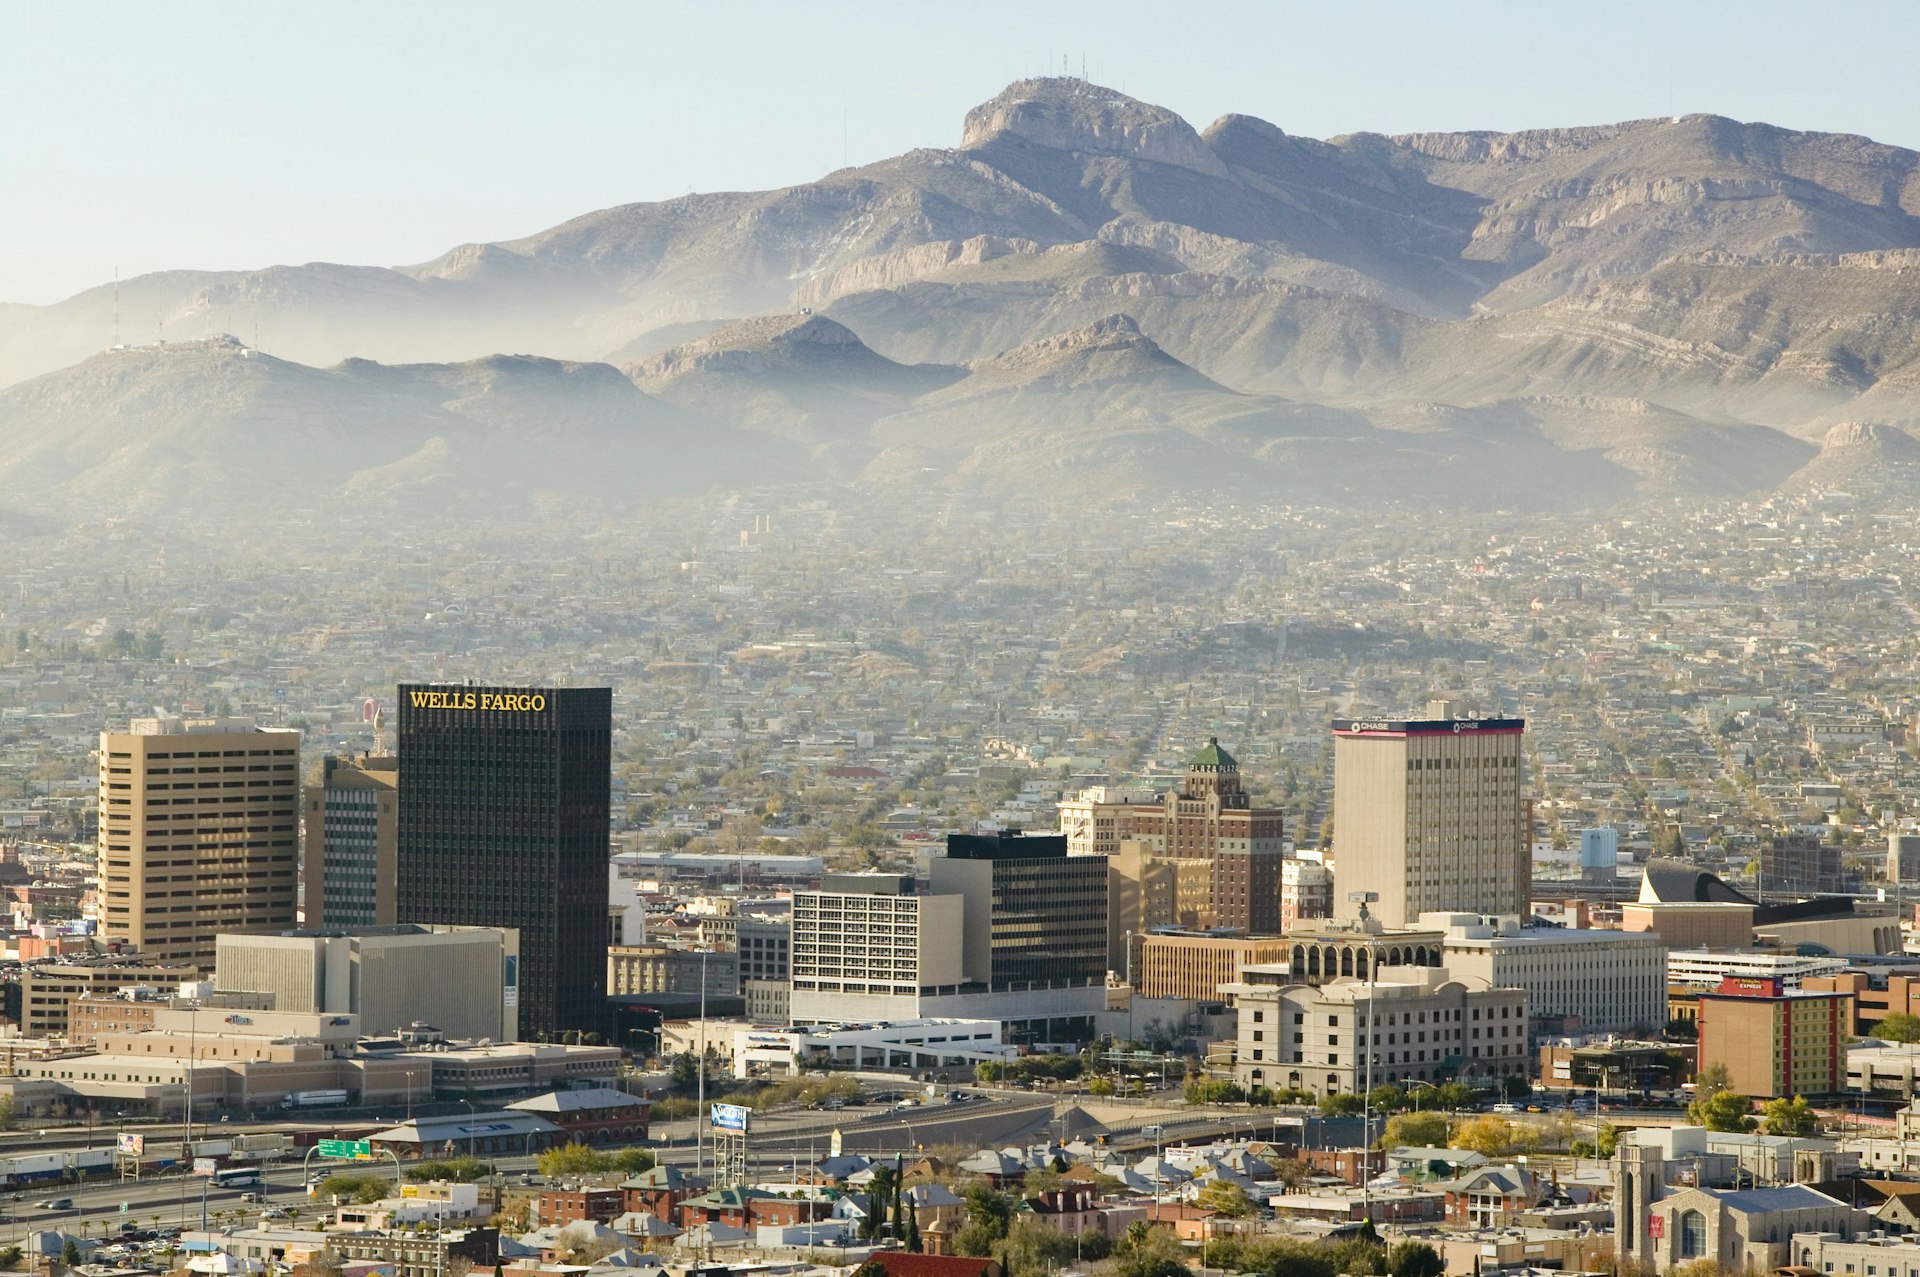 Panoramic view of skyline El Paso Texas looking toward Juarez, Mexico